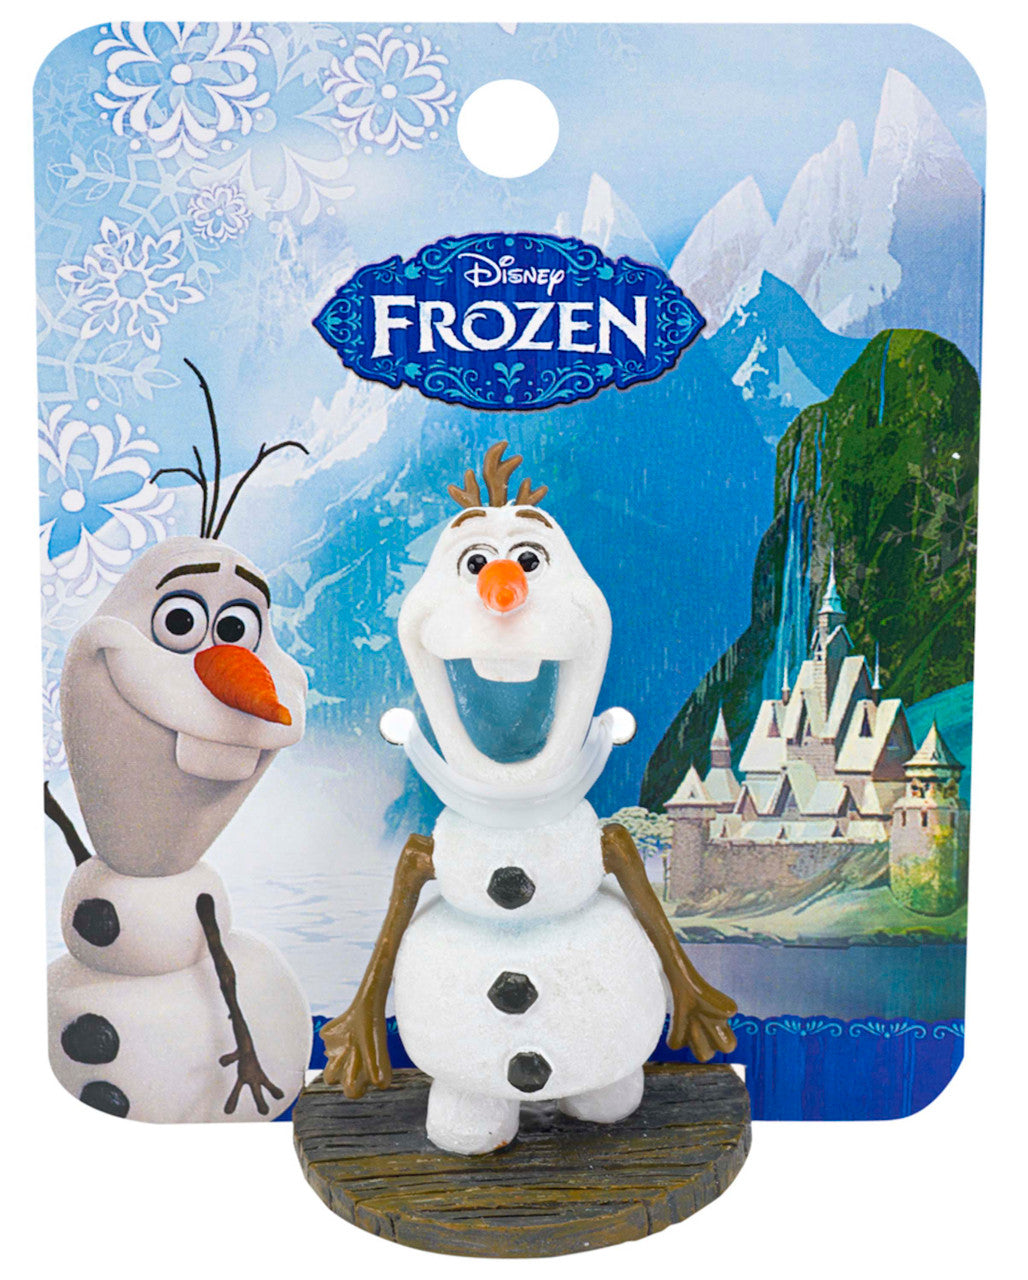 Disney Frozen Olaf Standing Mini Resin Ornament Black, White 2.25 in Mini